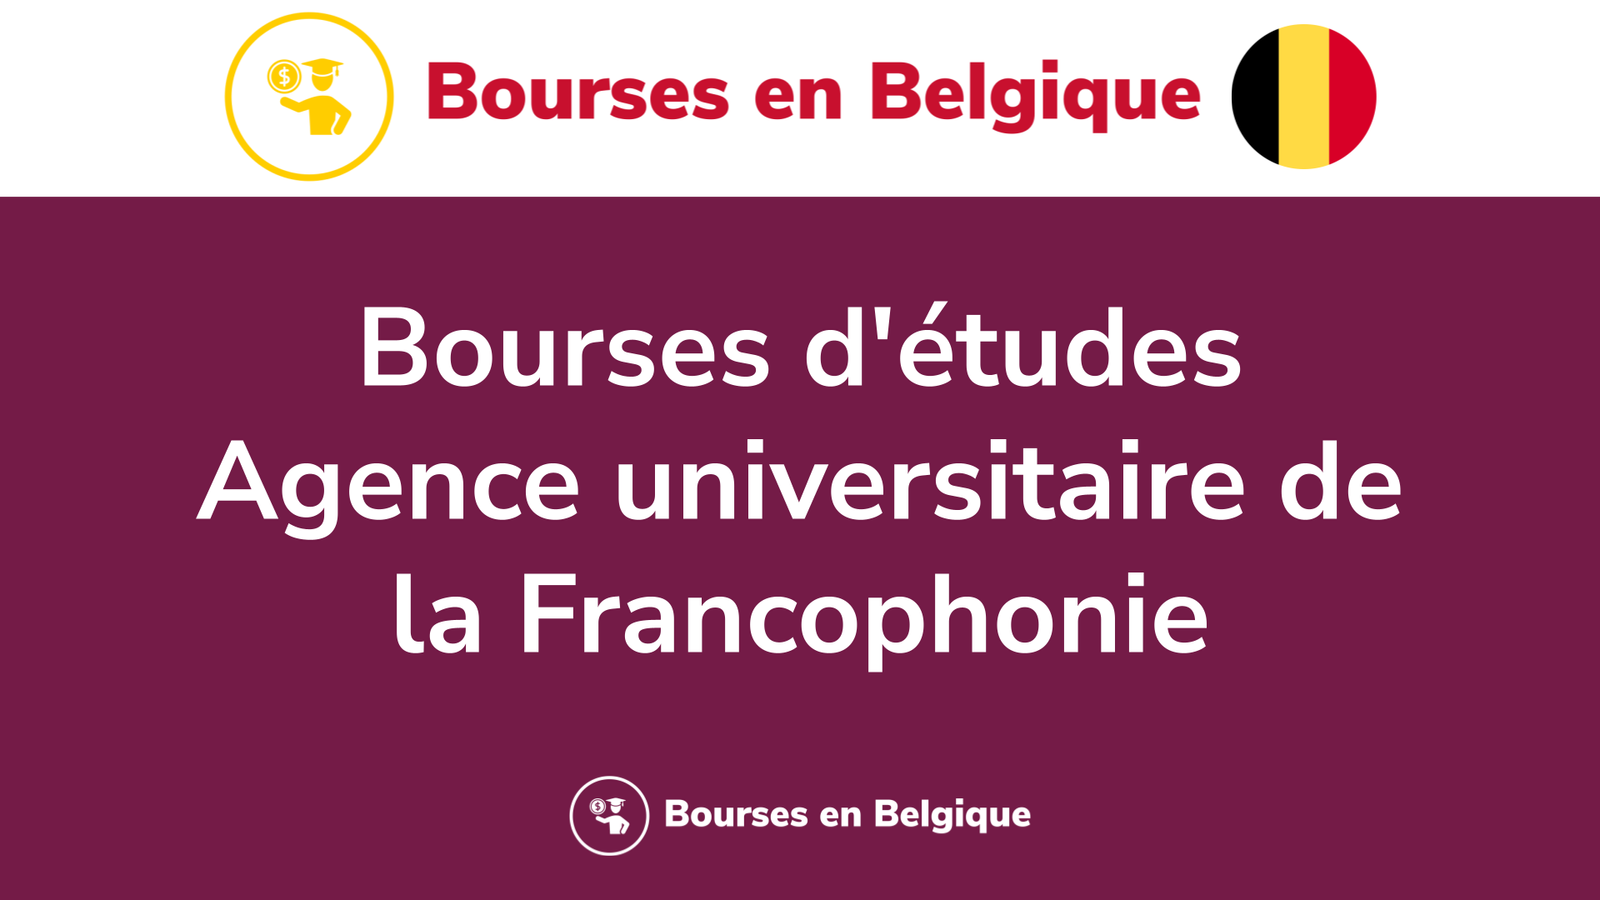 Bourses d'études Agence universitaire de la Francophonie